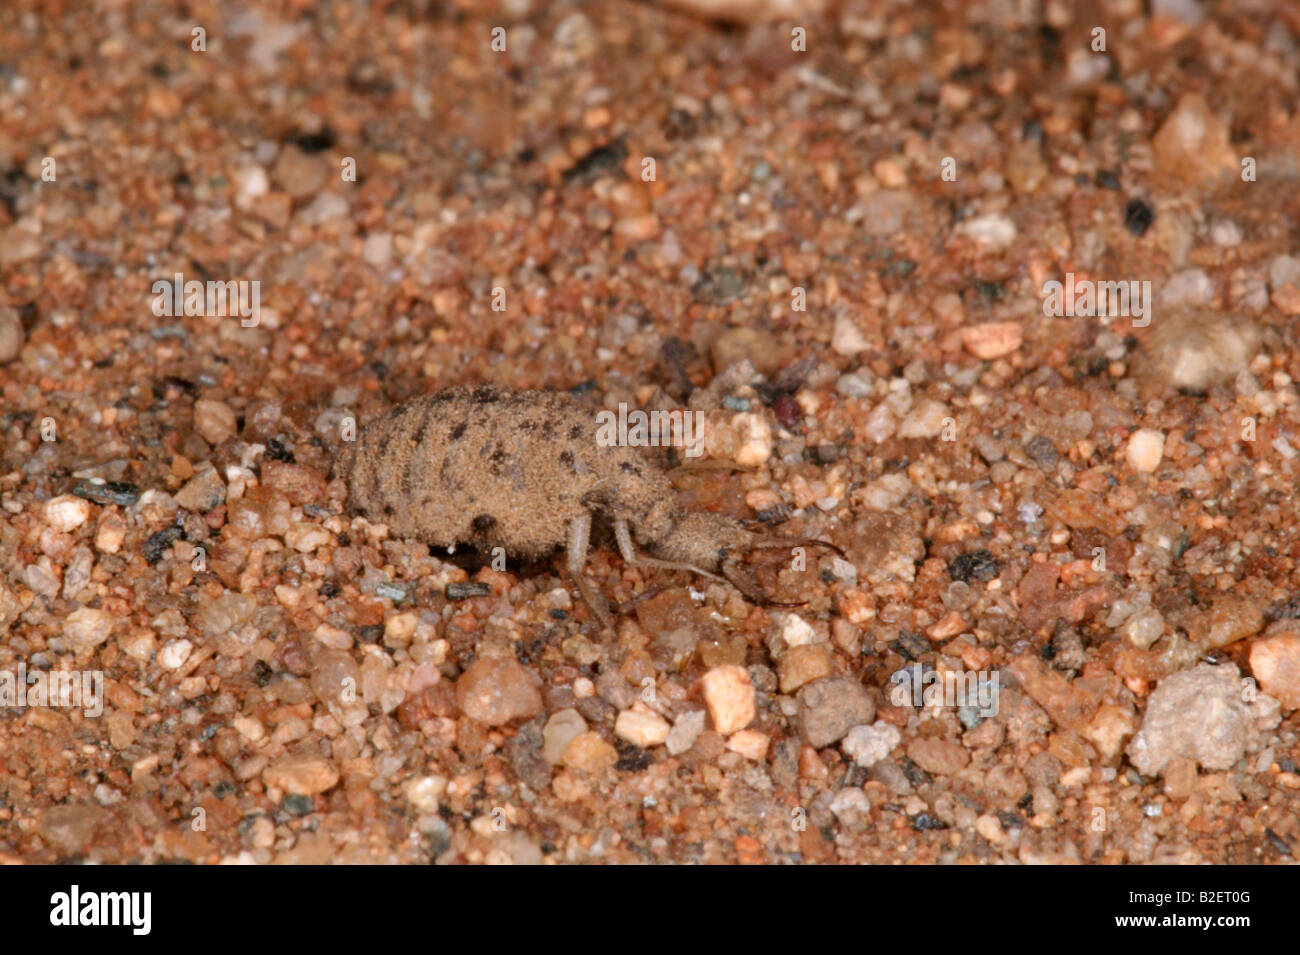 Ant-lion mâle montrant les grandes mâchoires utilisés pour attraper les insectes de tomber dans leurs pièges coniques Banque D'Images